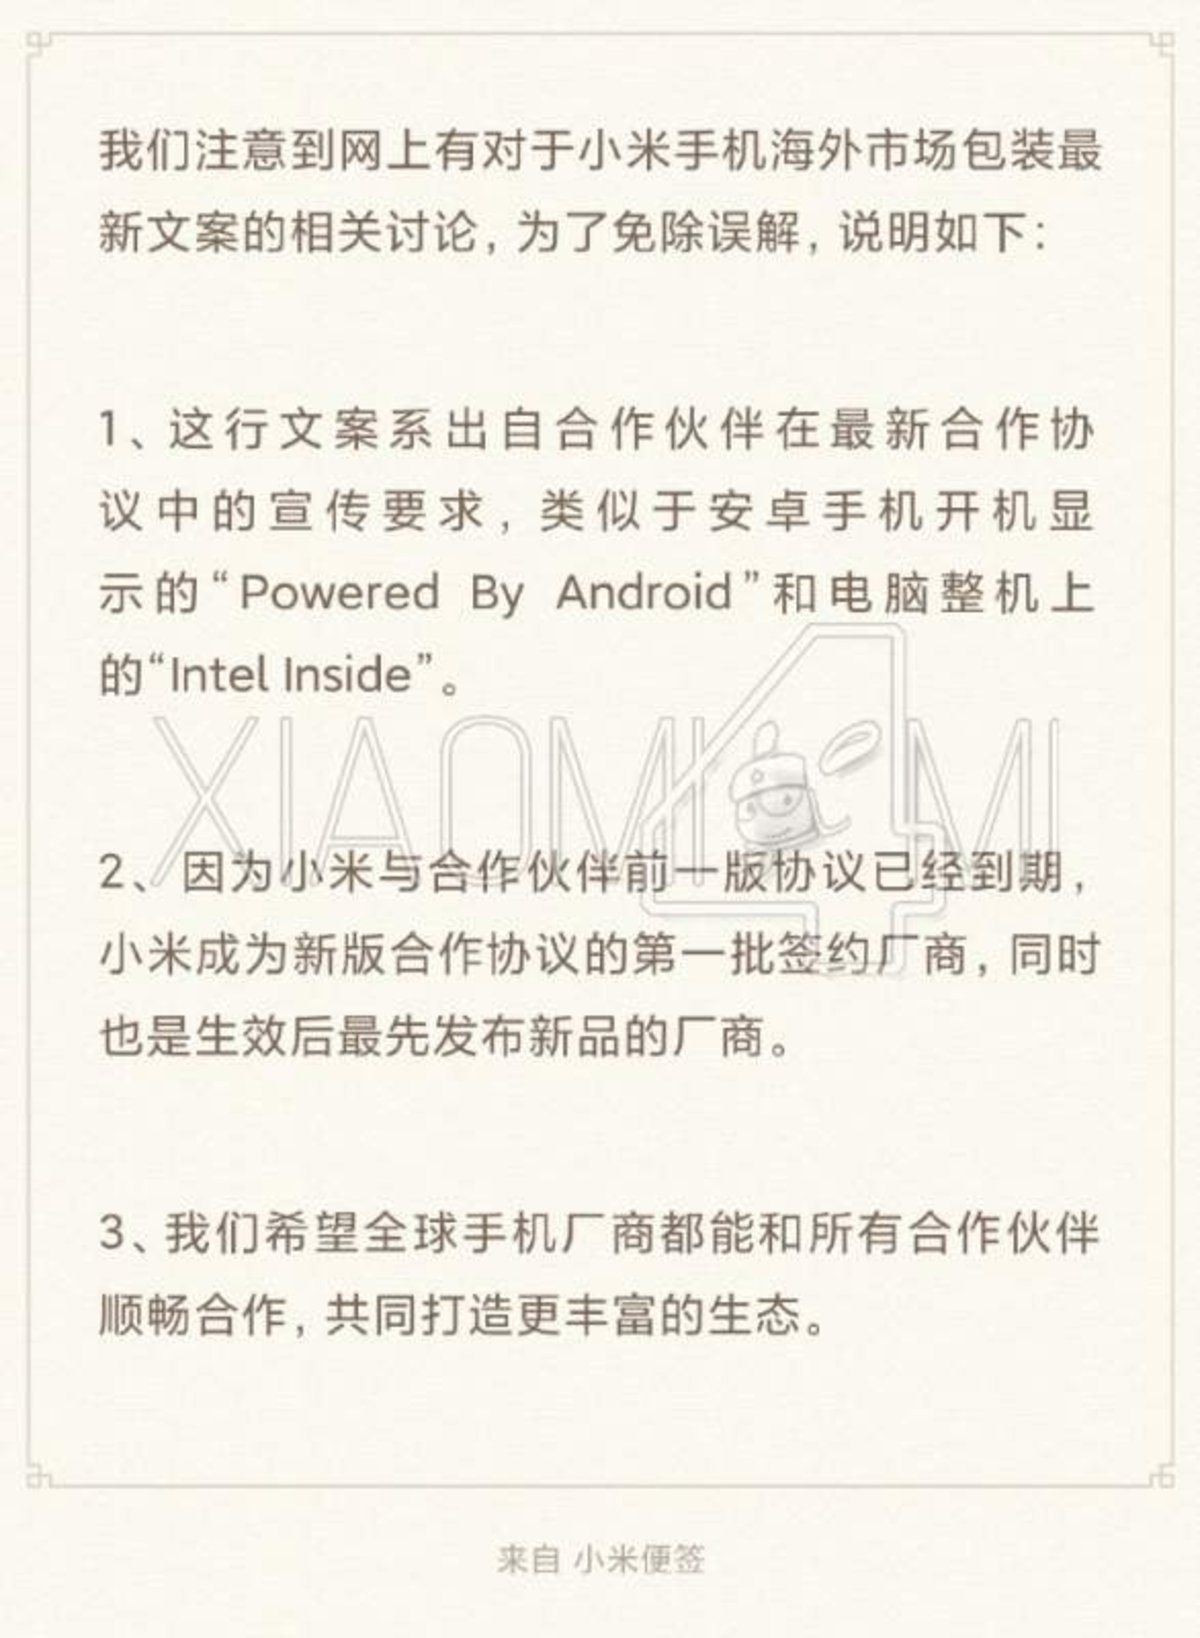 Los Xiaomi Mi 10 Pro se ríen de Huawei, y en China no ha gustado a nadie